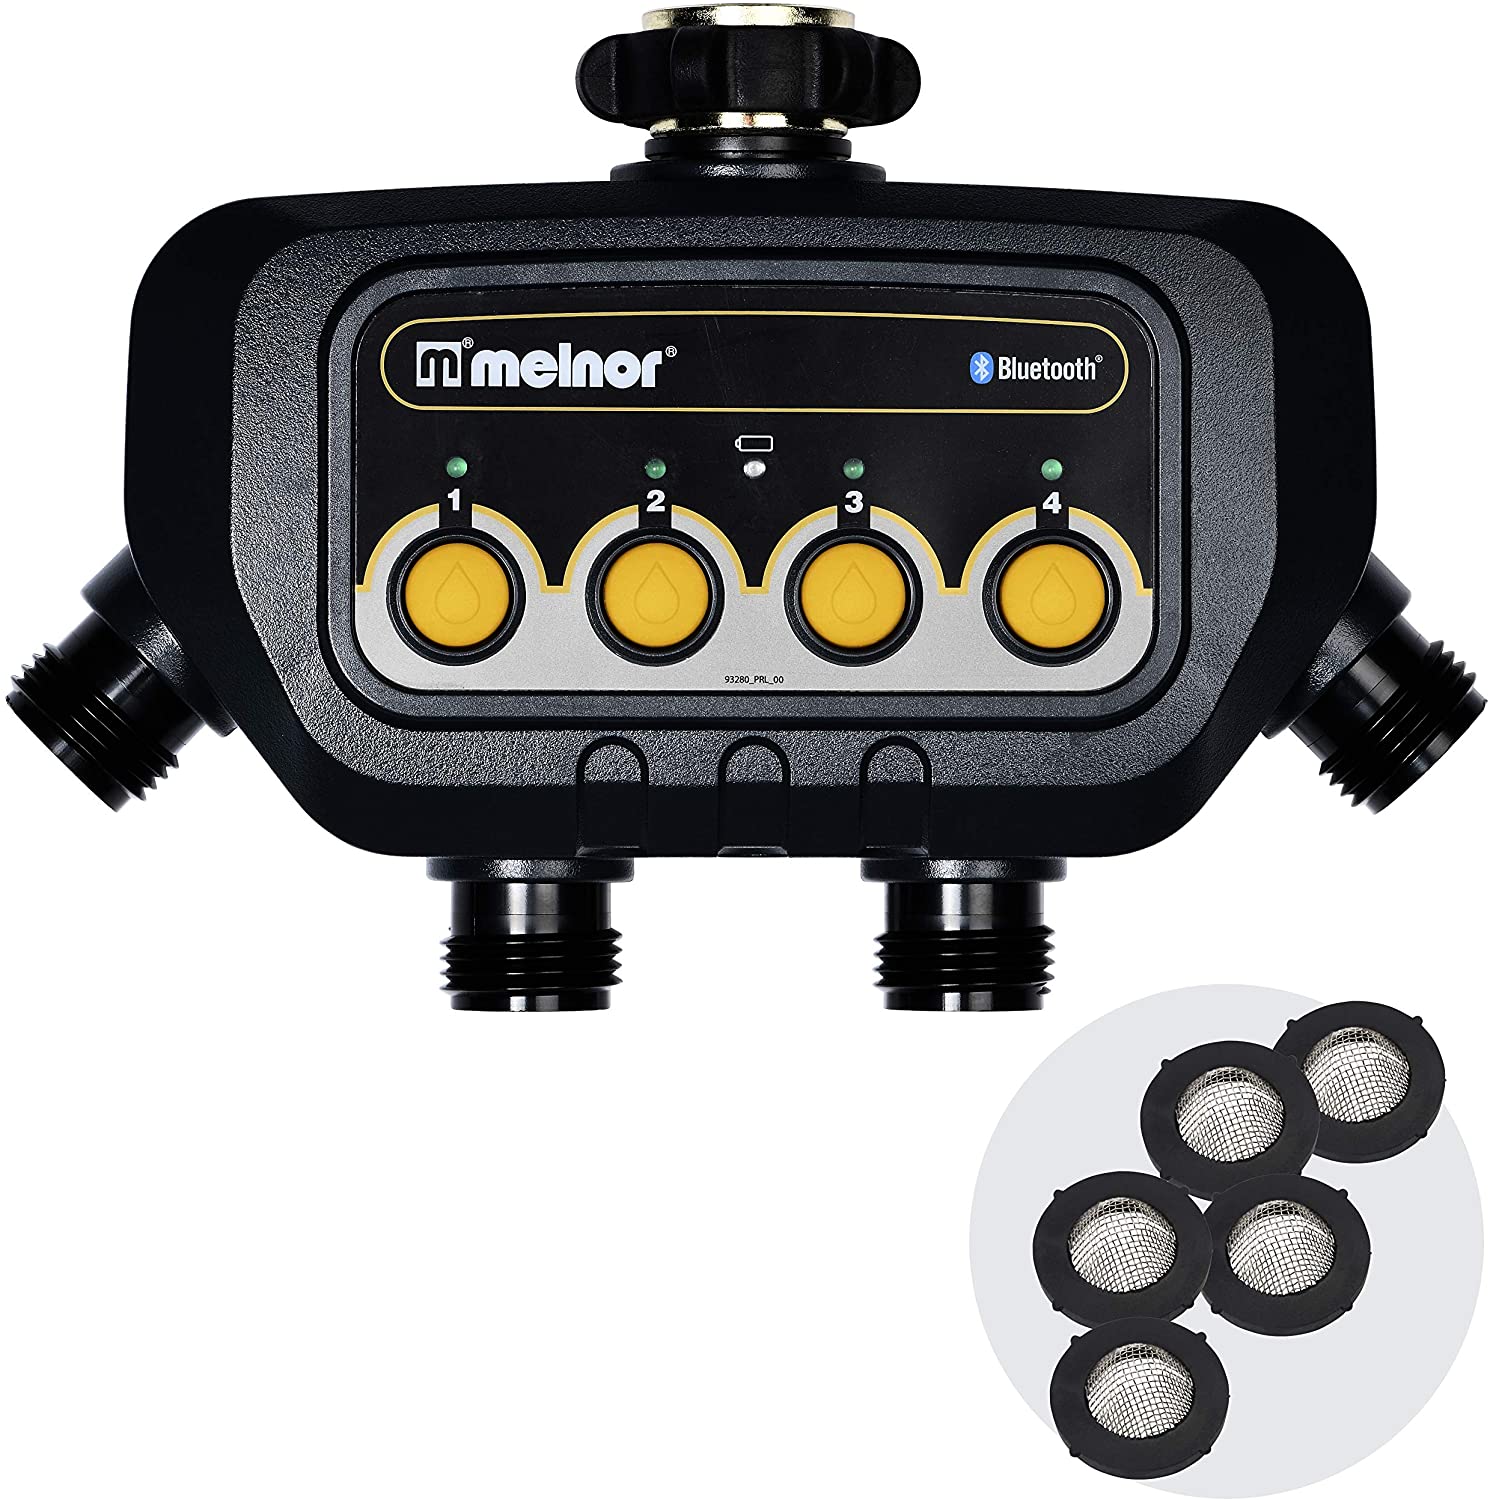 5. Melnor 4-Zone Bluetooth Water Timer